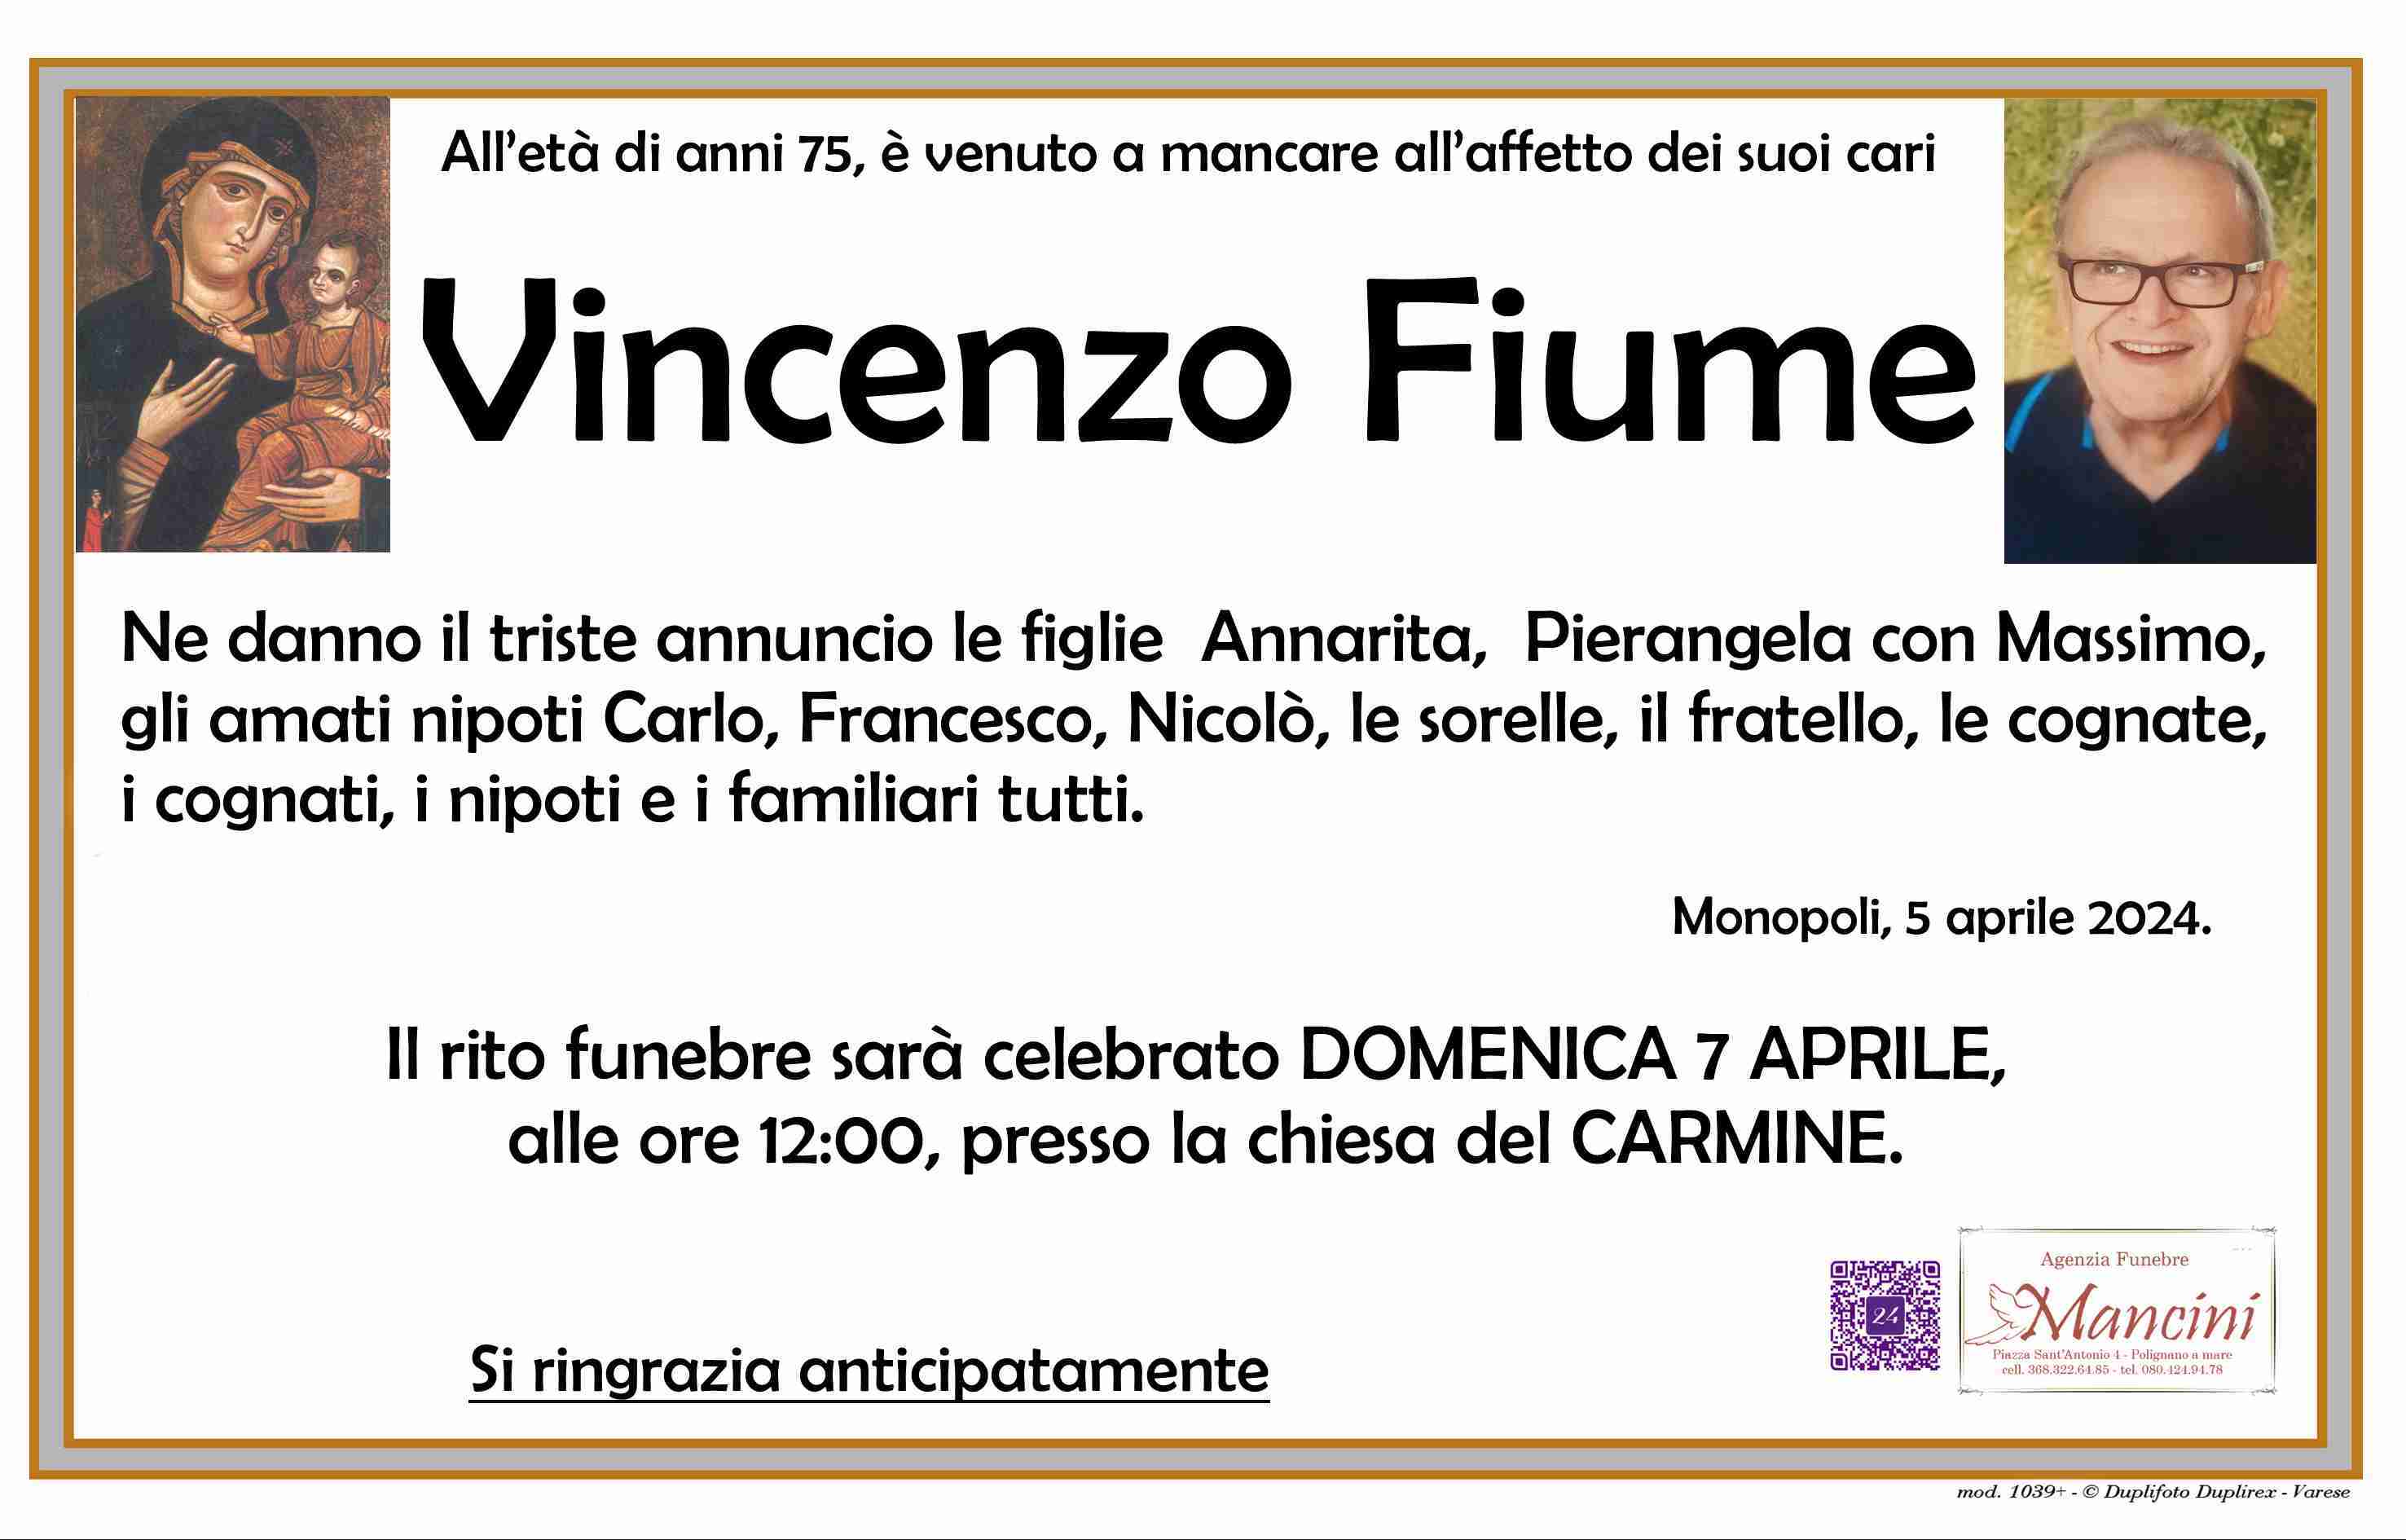 Vincenzo Fiume